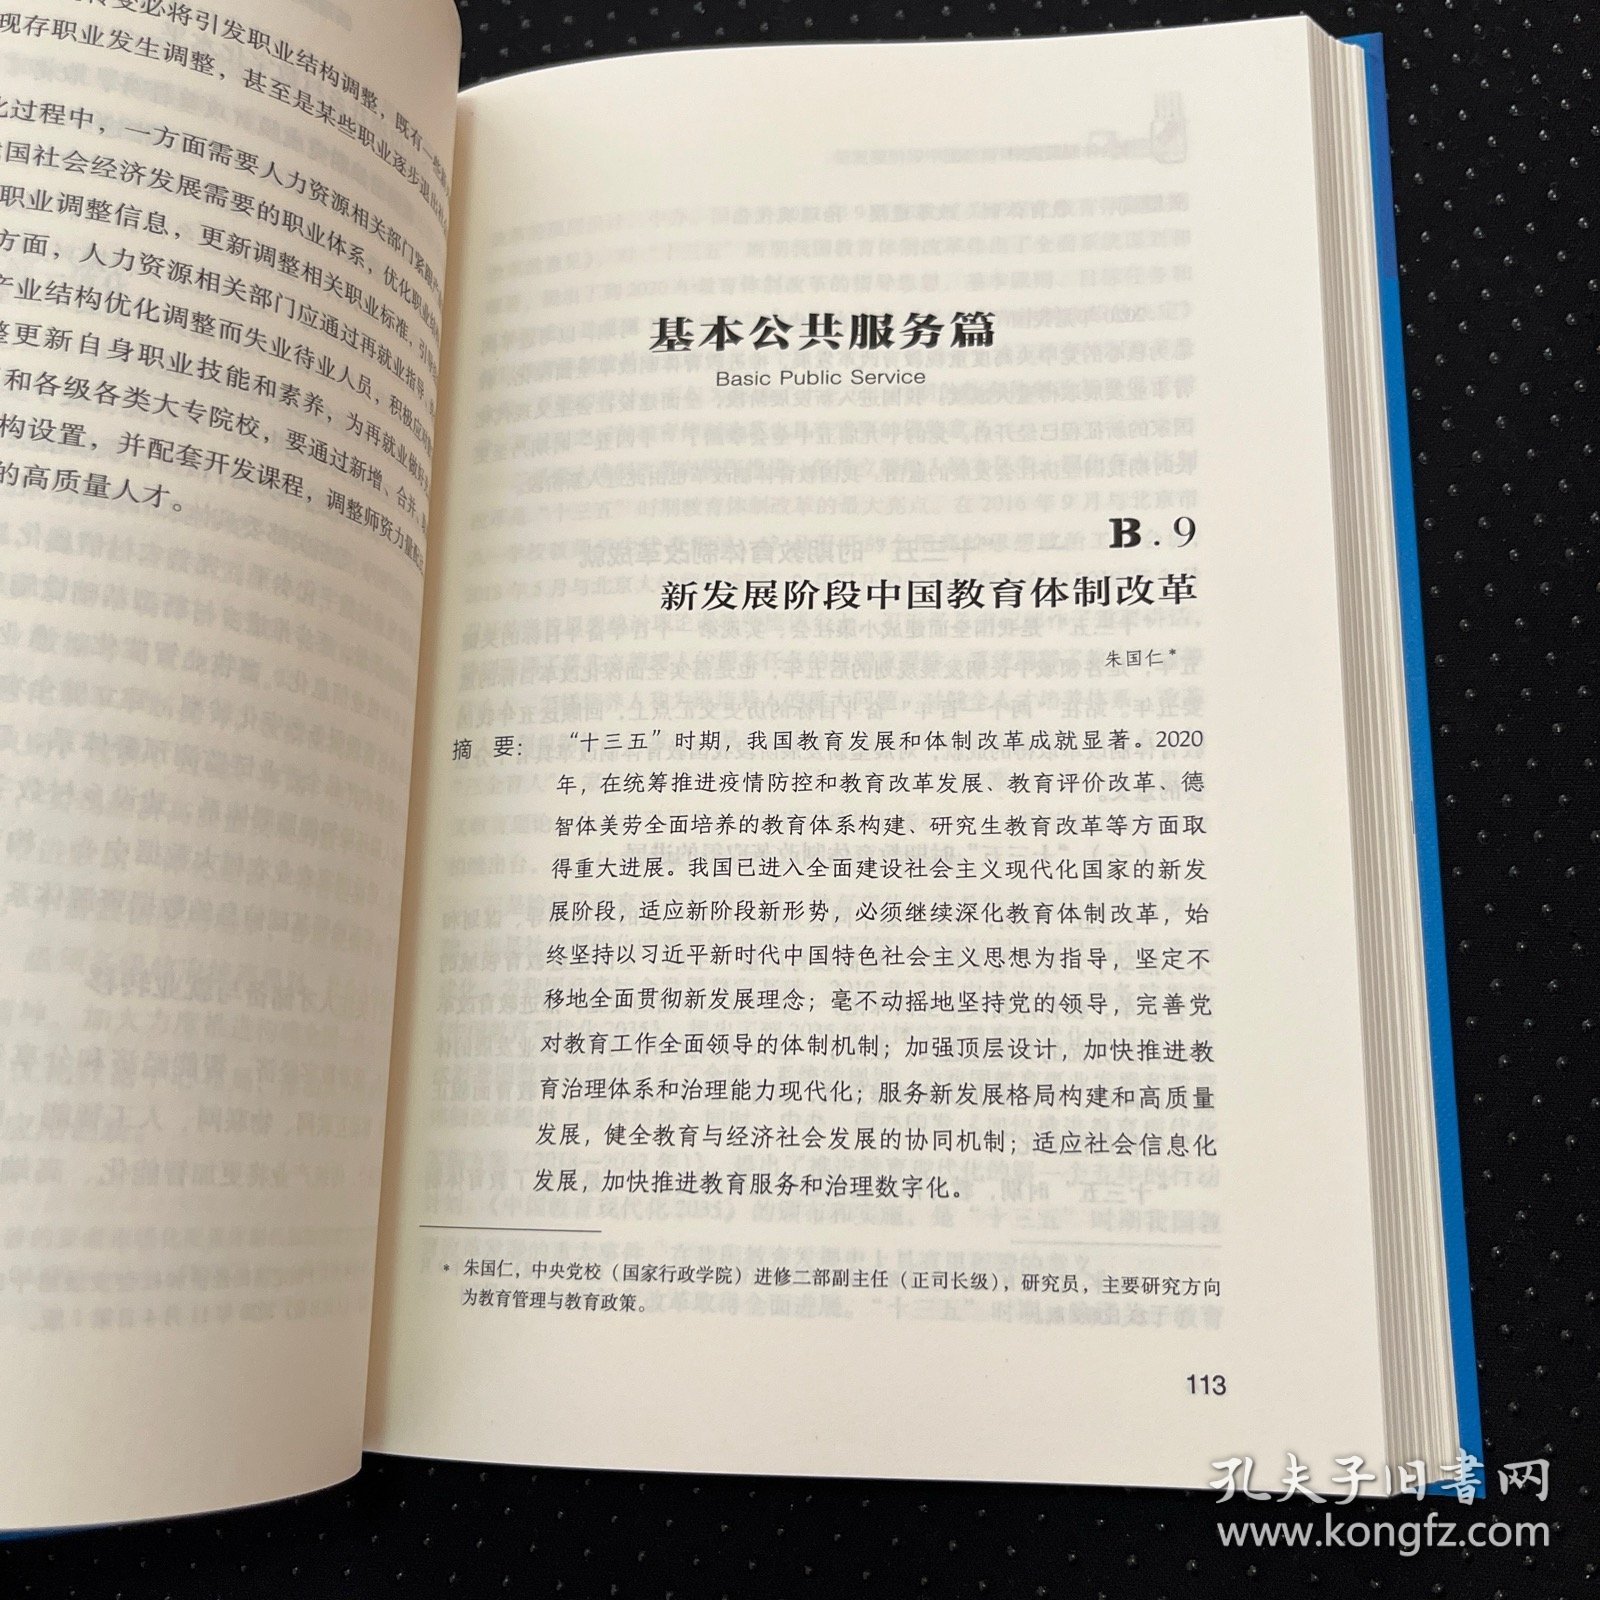 社会体制蓝皮书：中国社会体制改革报告No.9（2021）